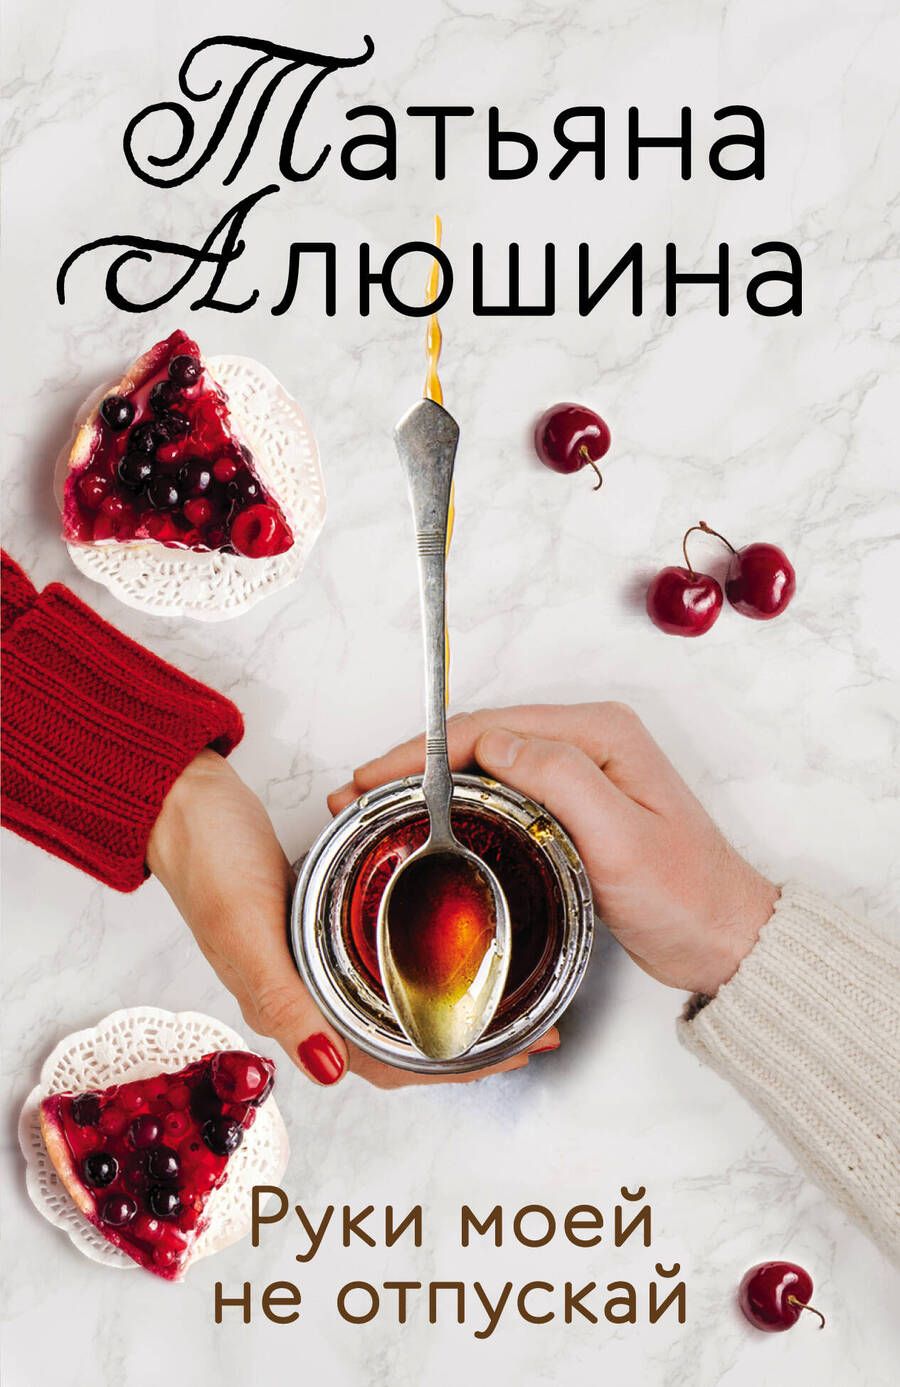 Обложка книги "Татьяна Алюшина: Руки моей не отпускай"